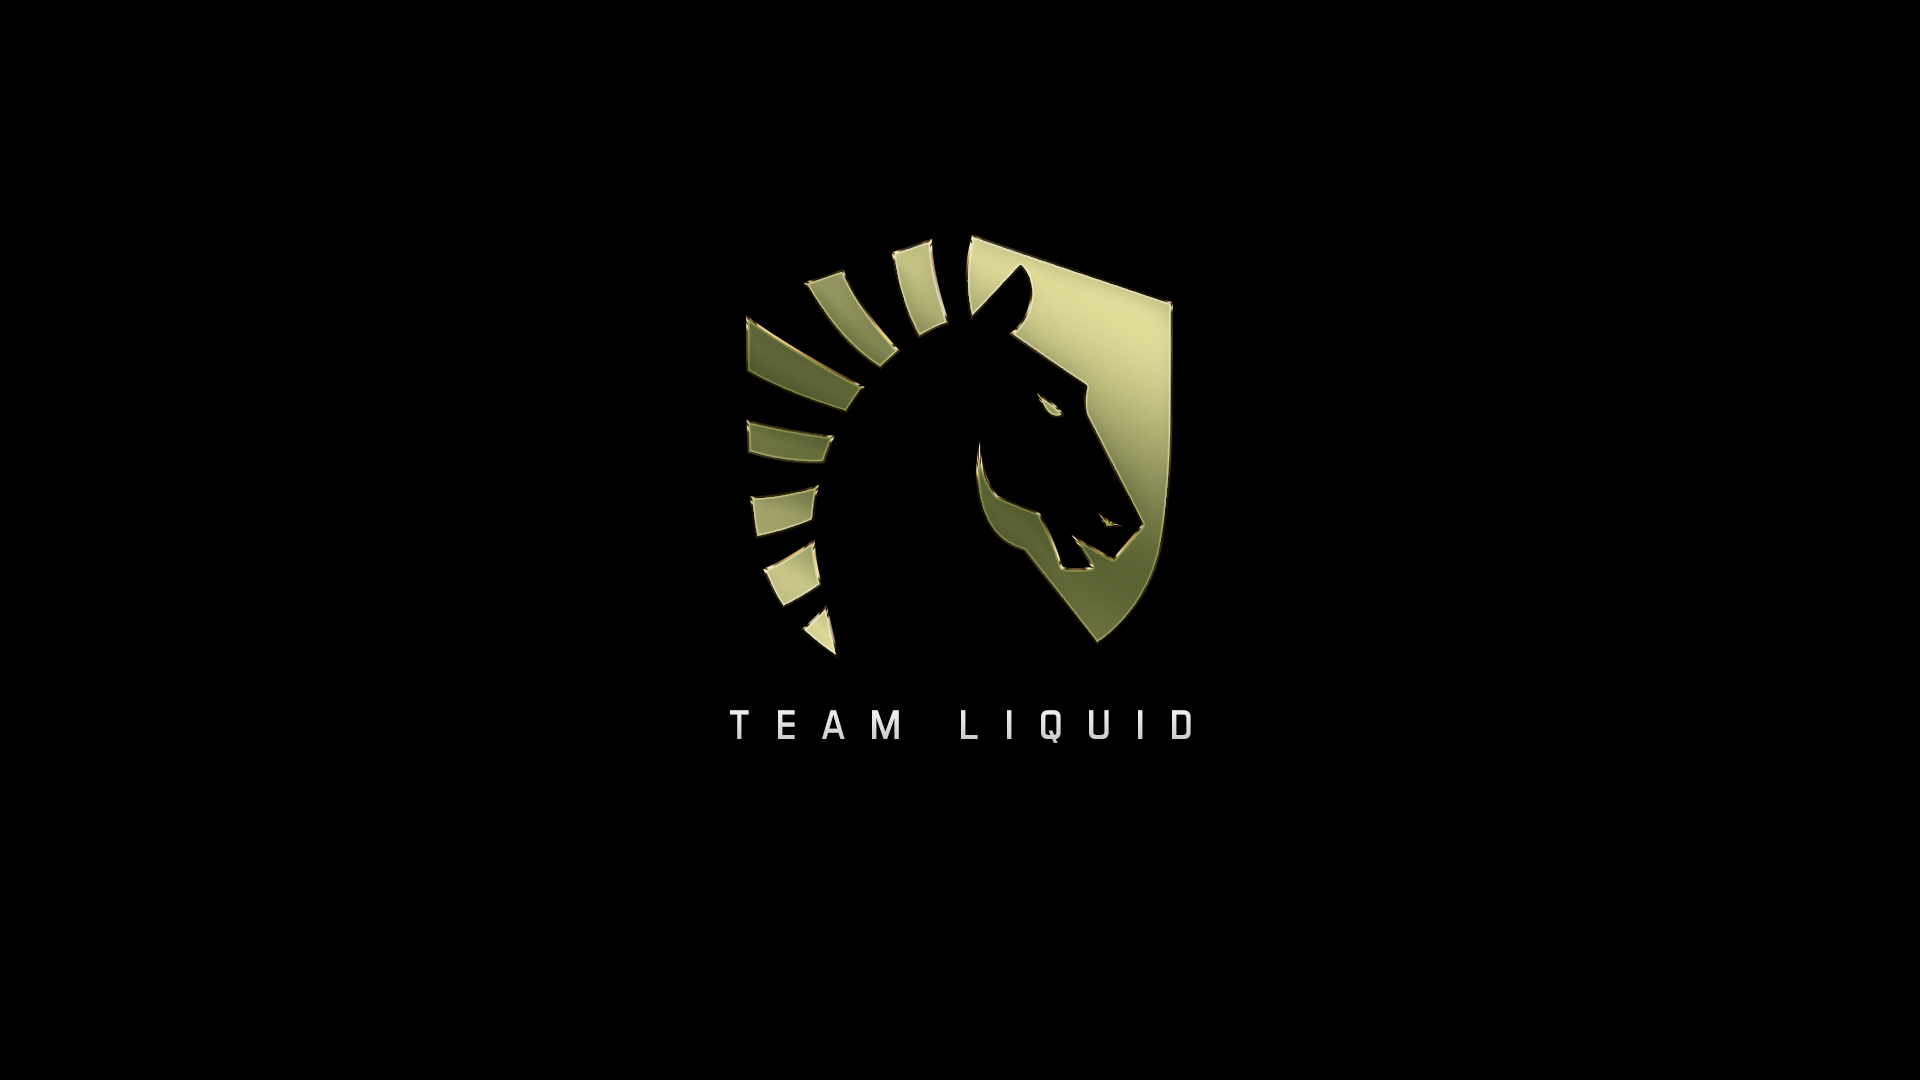 Team liquid steam фото 27